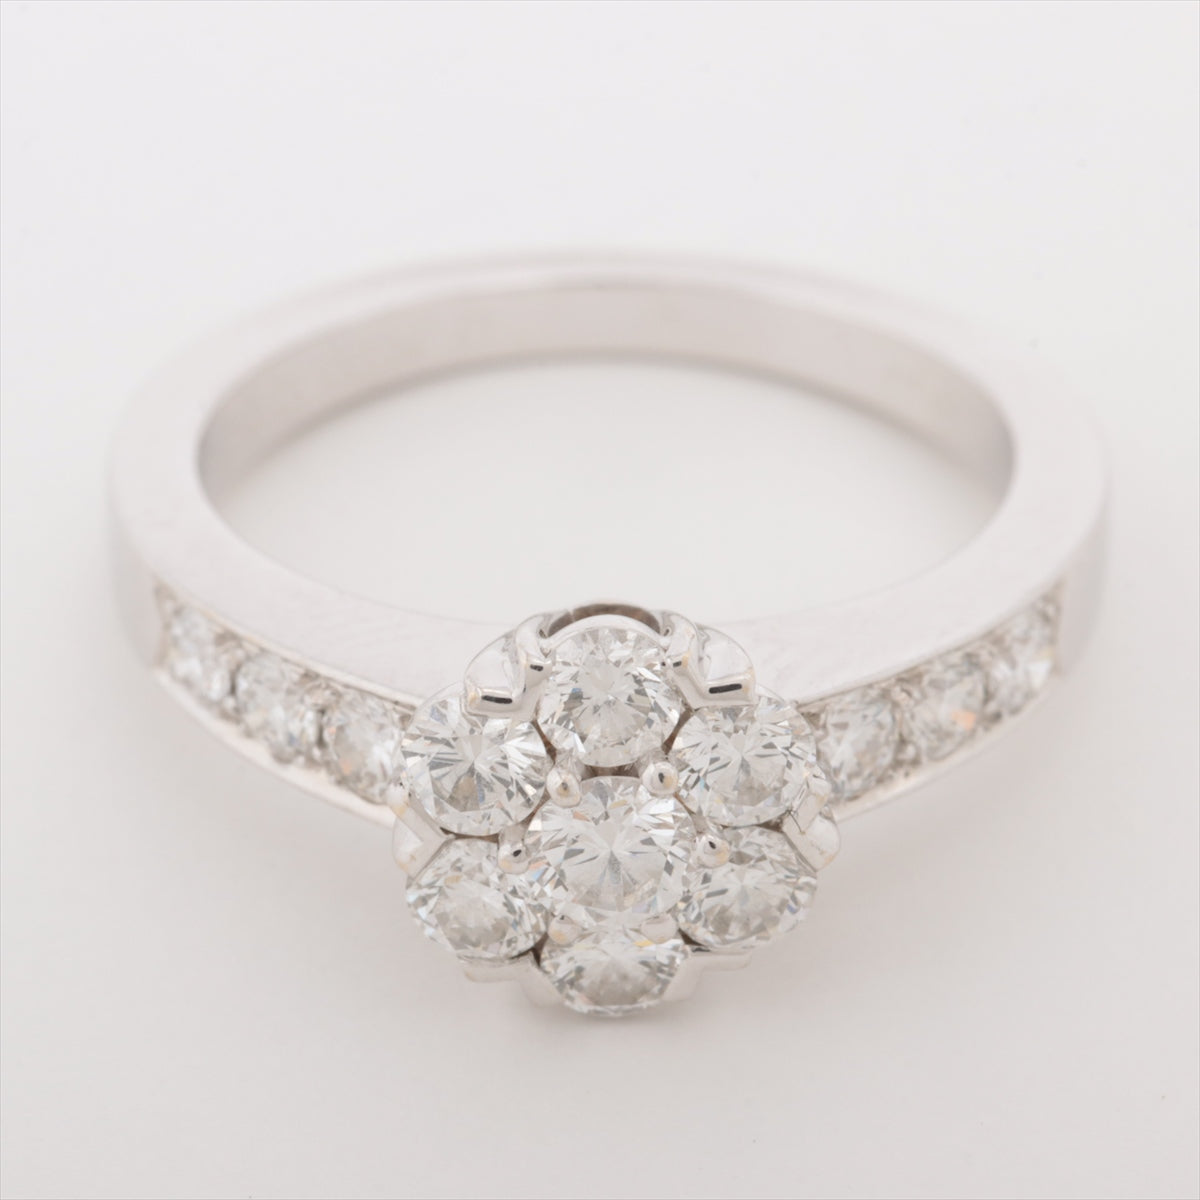 Van Cleef & Arpels Fleurette diamond rings 750(WG) 4.0g 47